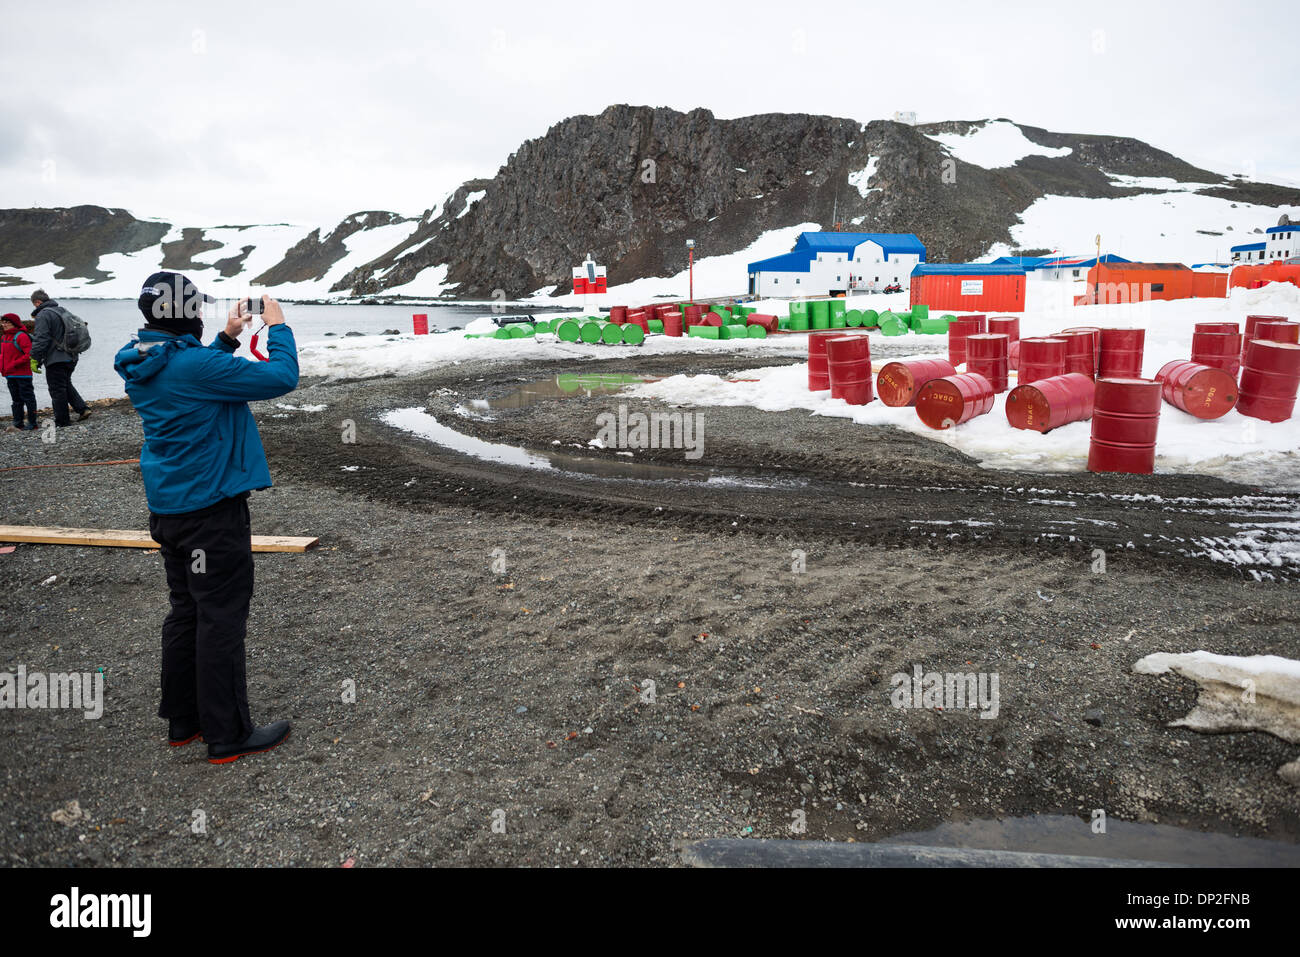 Antartide - turisti in arrivo alla base Presidente Eduardo Frei Montalva su King George Island in Antartide. La base è la più importante del Cile antartico della ricerca scientifica basi e dispone anche di una pista che è disponibile a turistica voli charter. Foto Stock